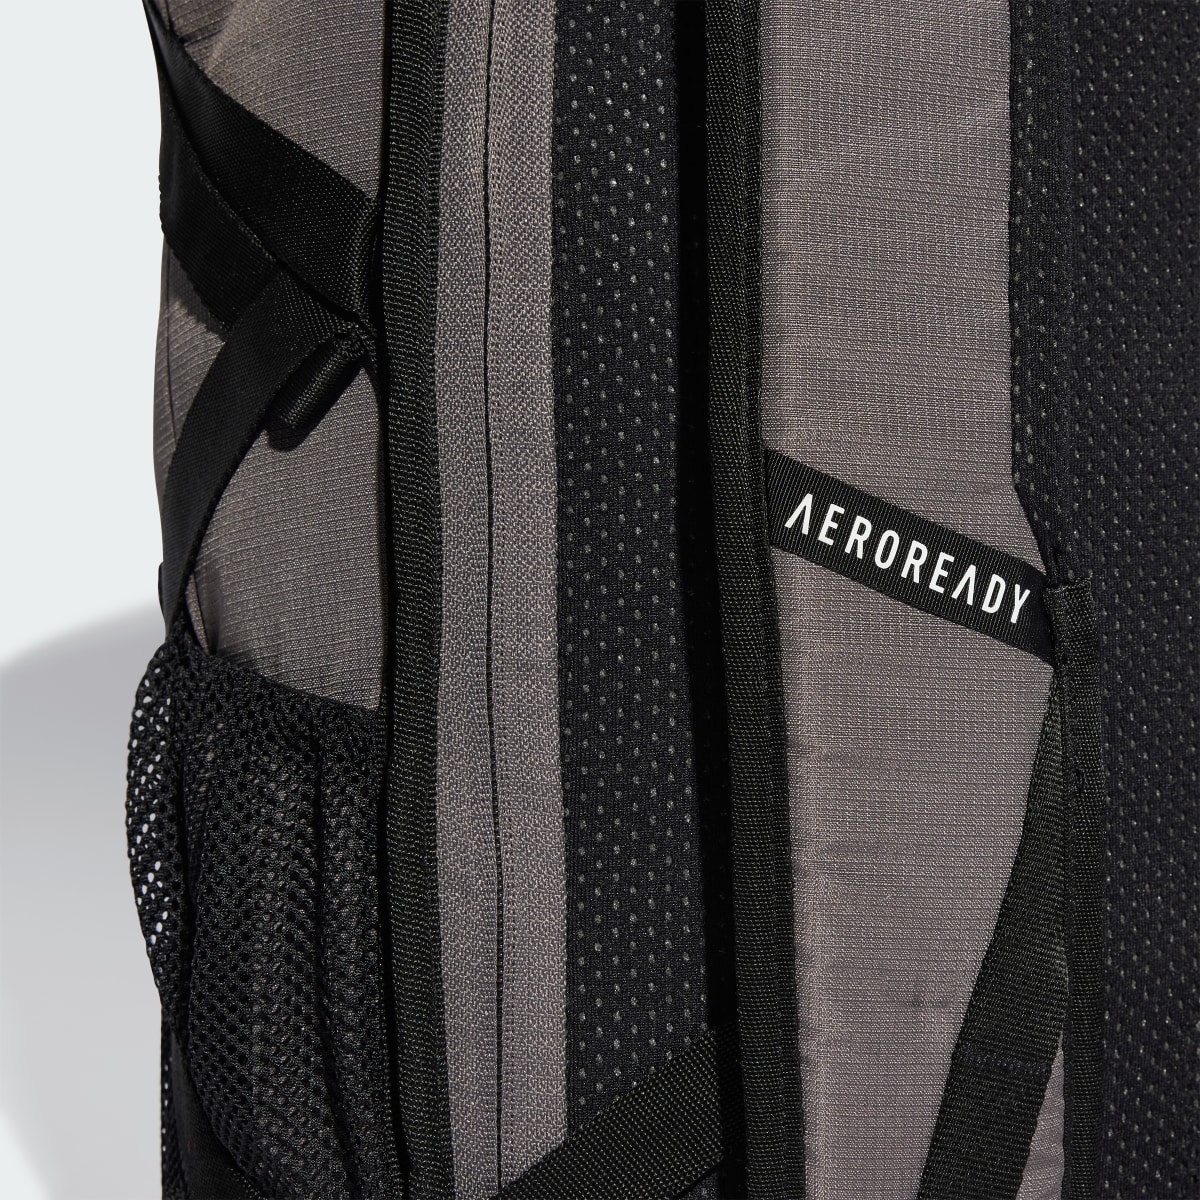 Adidas Terrex Backpack. 5